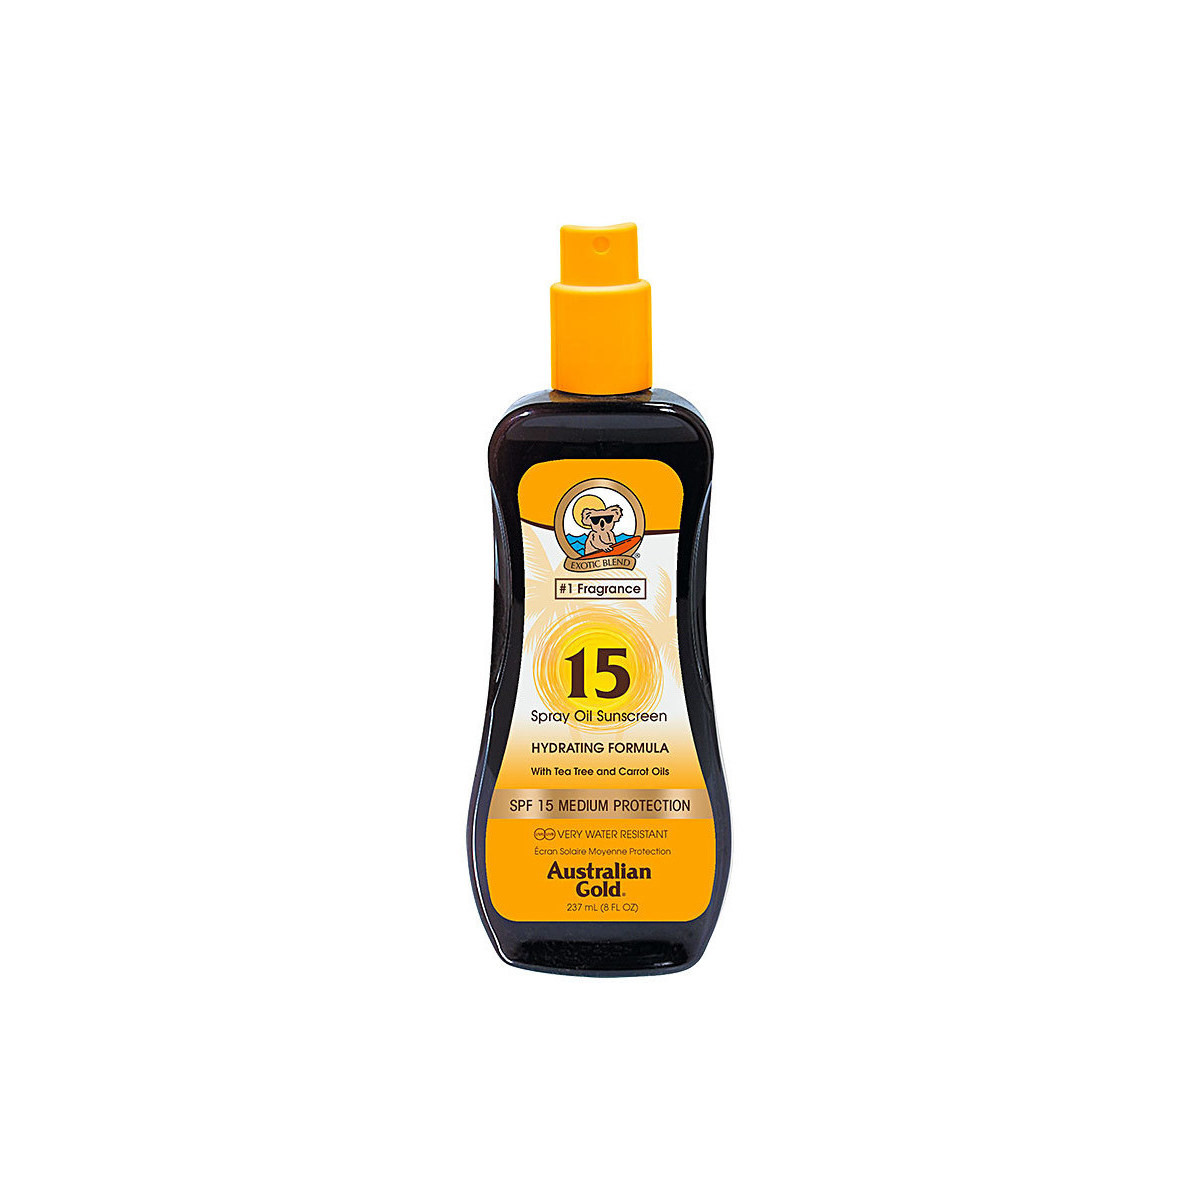 Bellezza Protezione solari Australian Gold Sunscreen Spf15 Spray Oil Hydrating Formula 